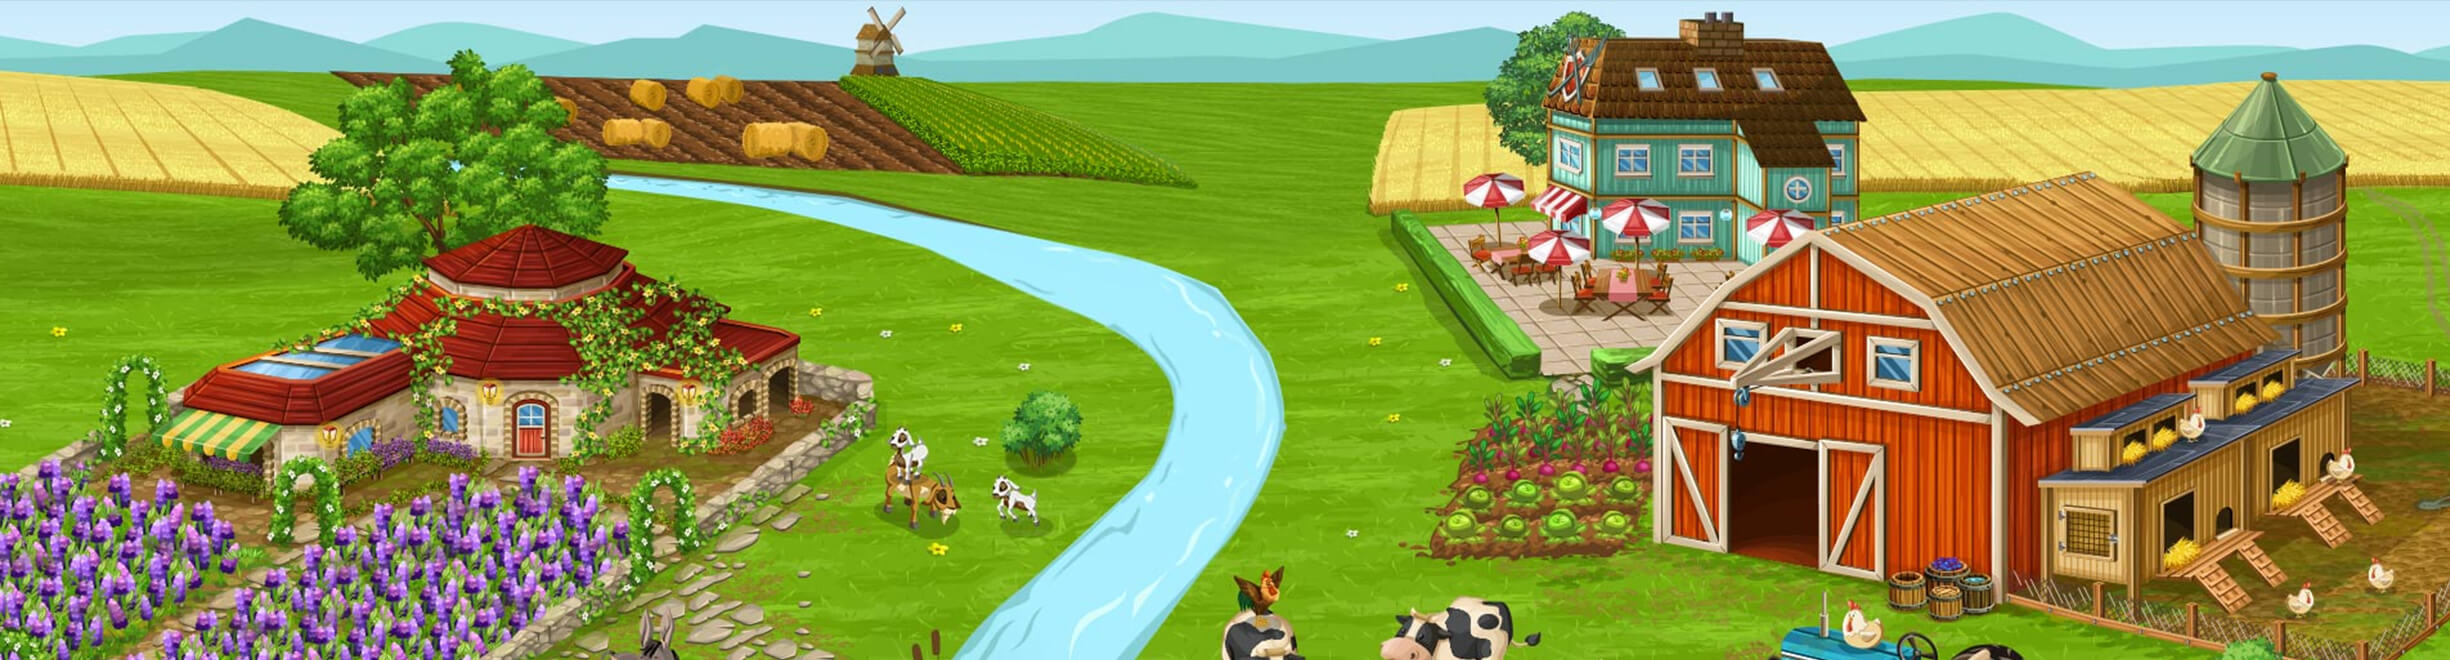 FARMING SIMULATOR jogo online gratuito em